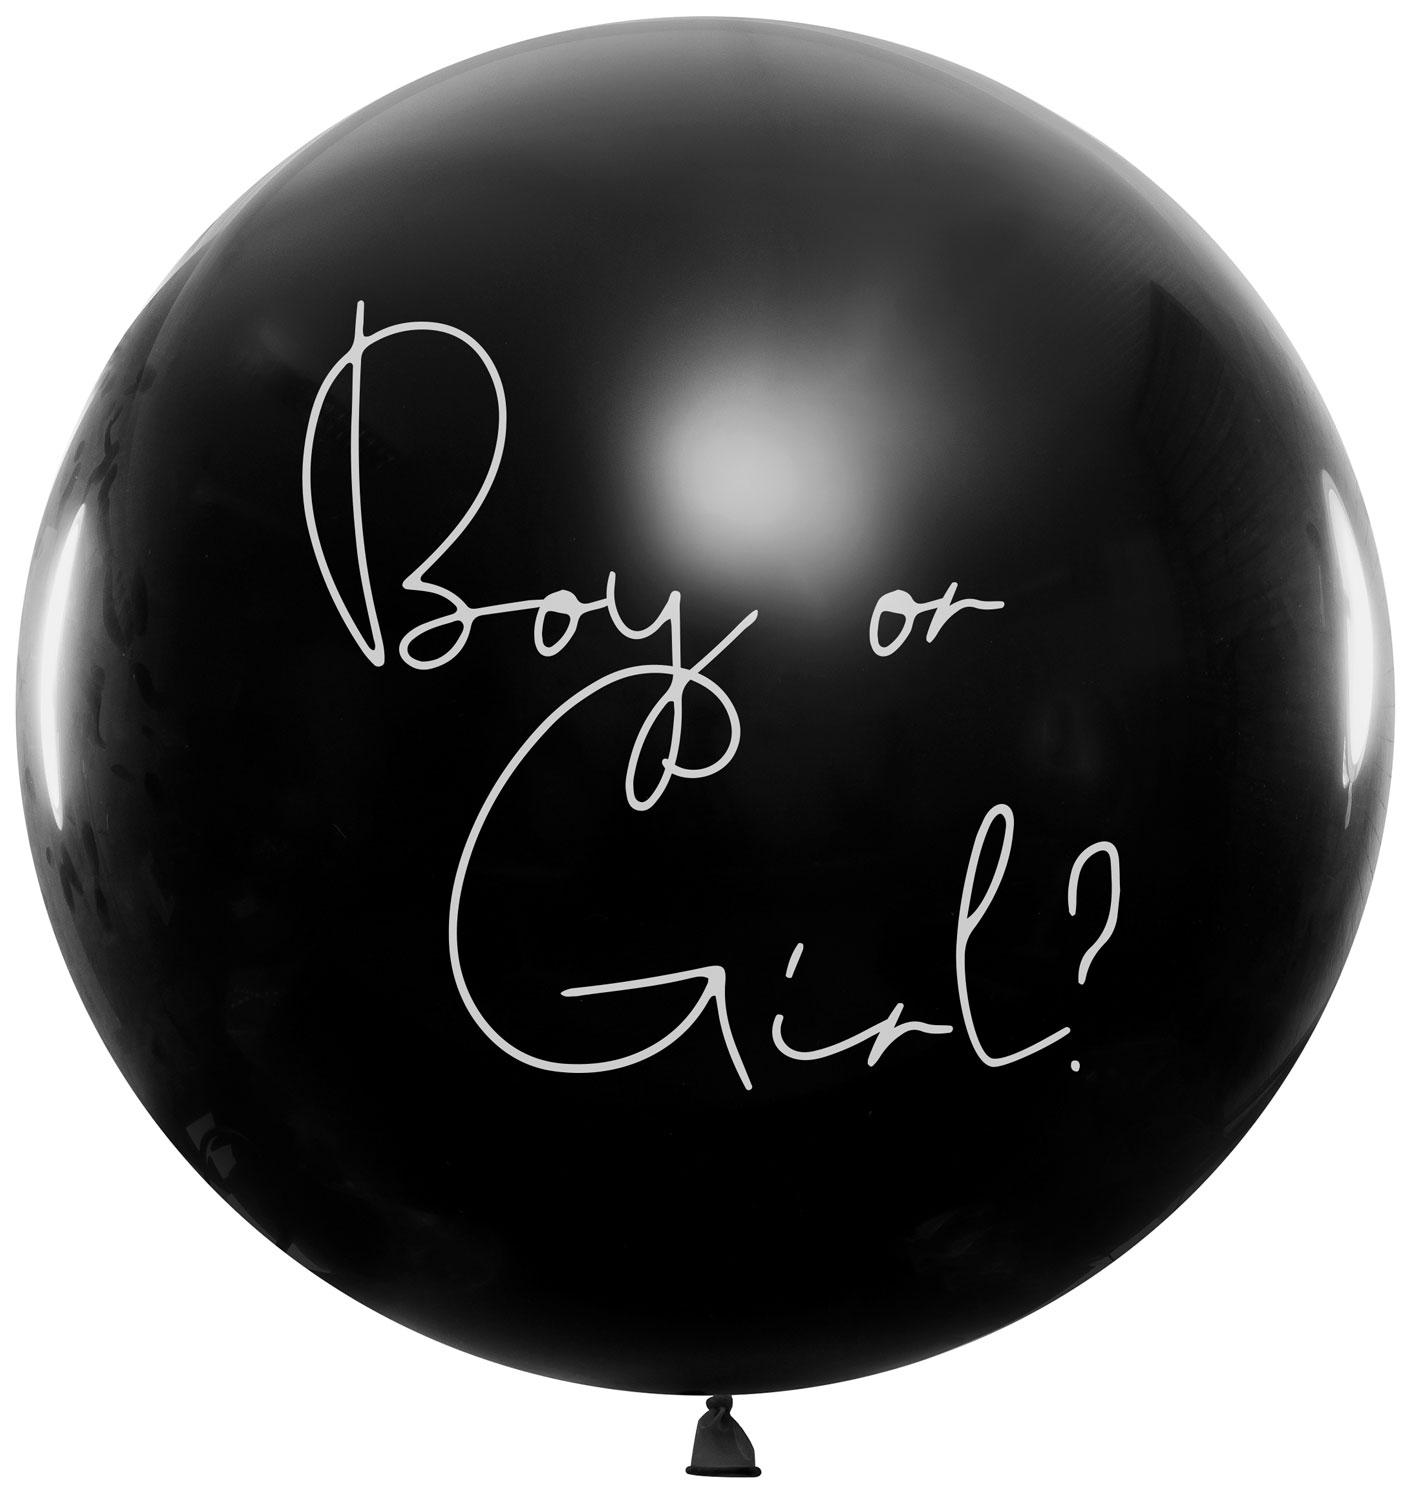 36" (100 cm) Boy or girl - Rosa konfetti